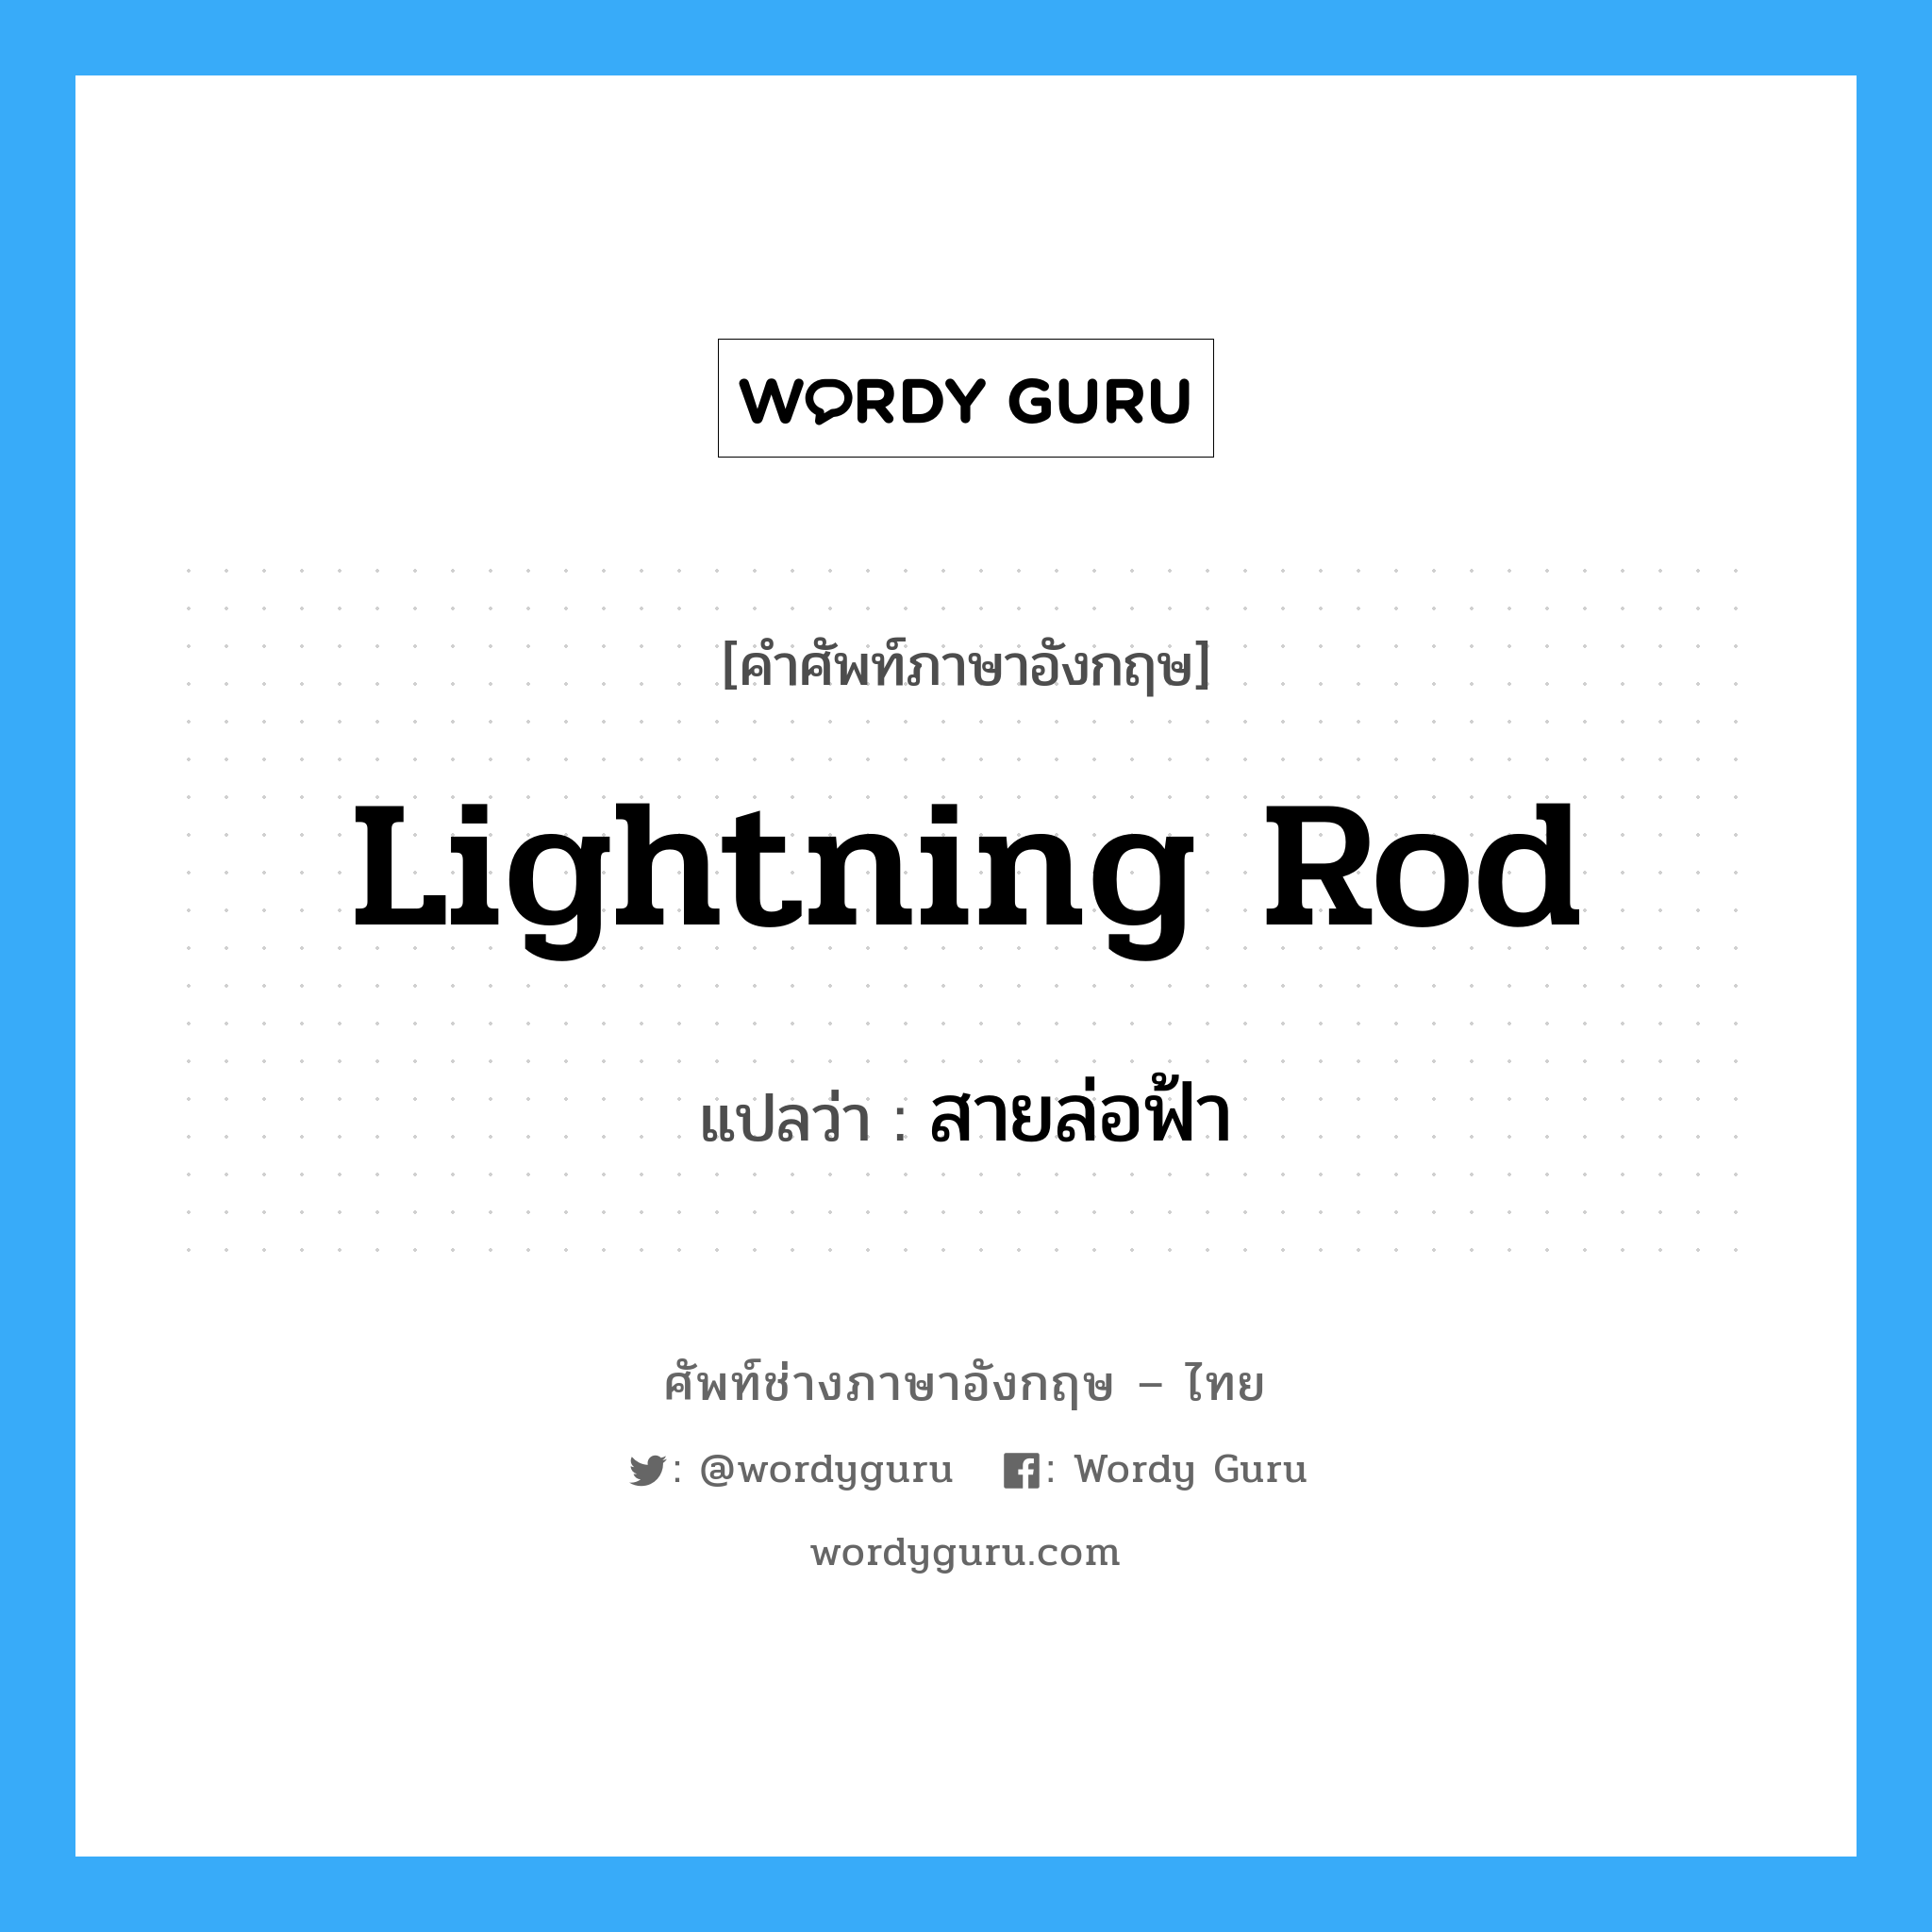 lightning-rod แปลว่า?, คำศัพท์ช่างภาษาอังกฤษ - ไทย lightning rod คำศัพท์ภาษาอังกฤษ lightning rod แปลว่า สายล่อฟ้า